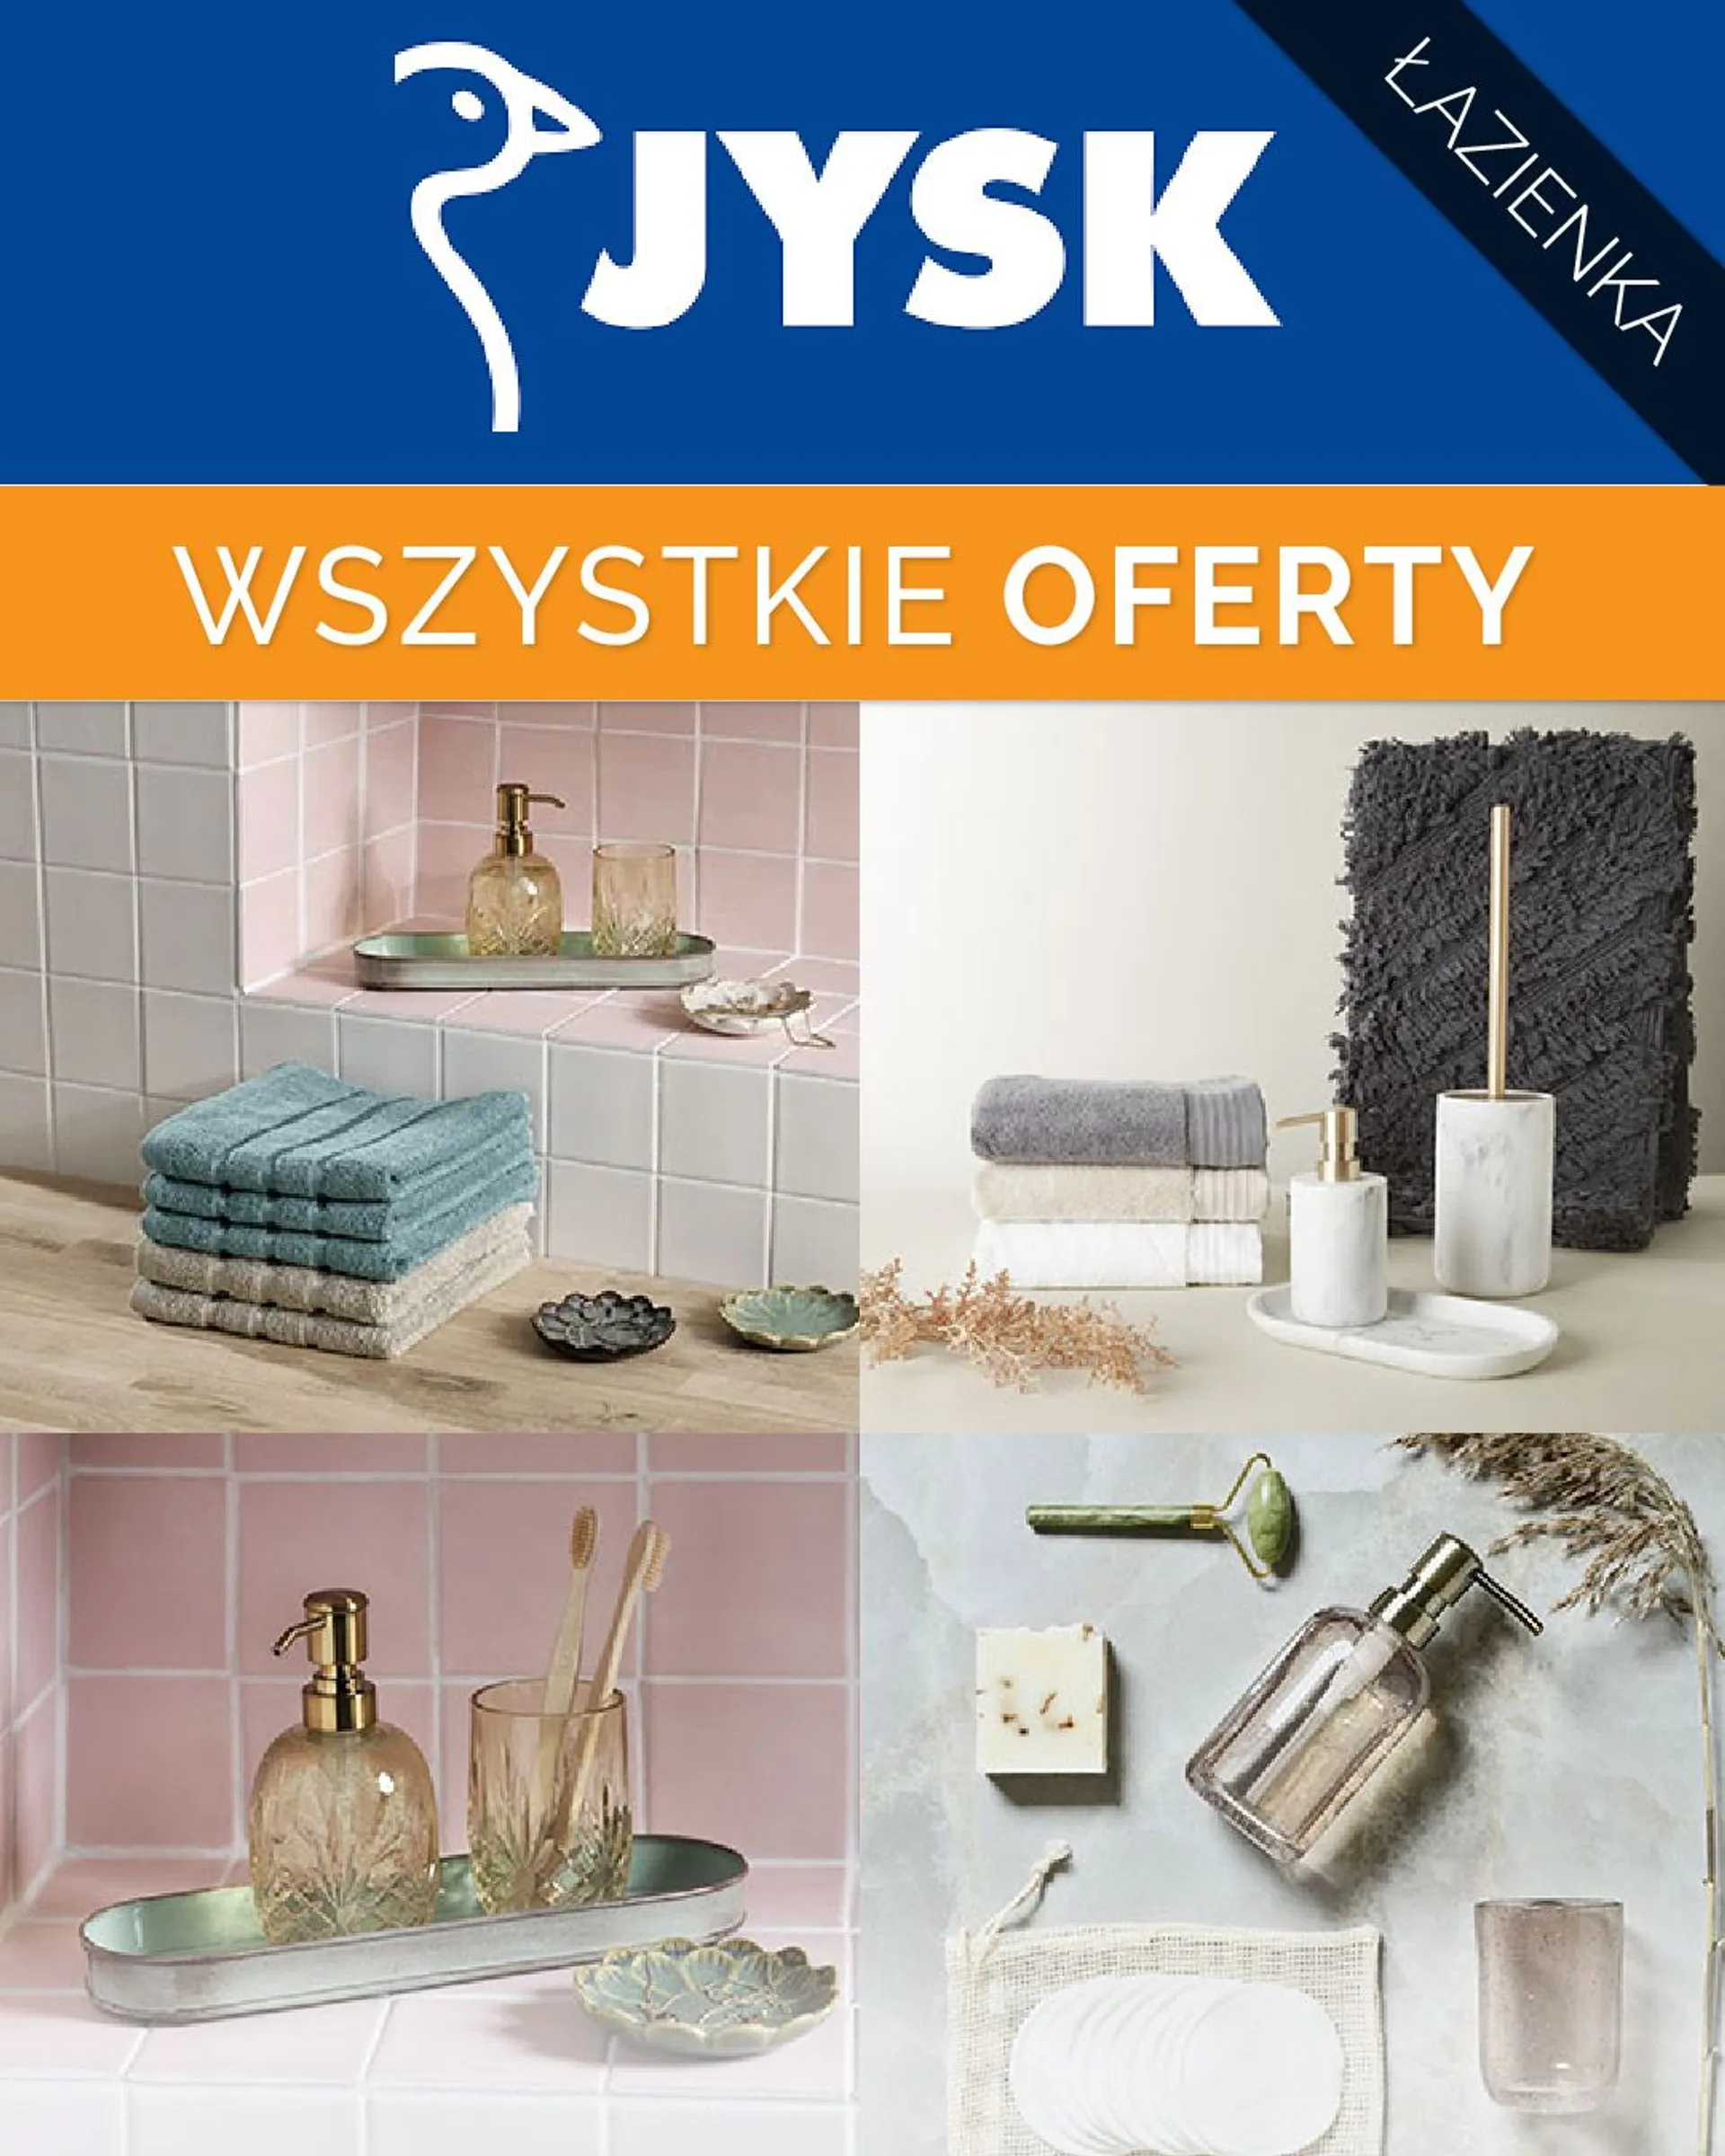 JYSK - Kitchen